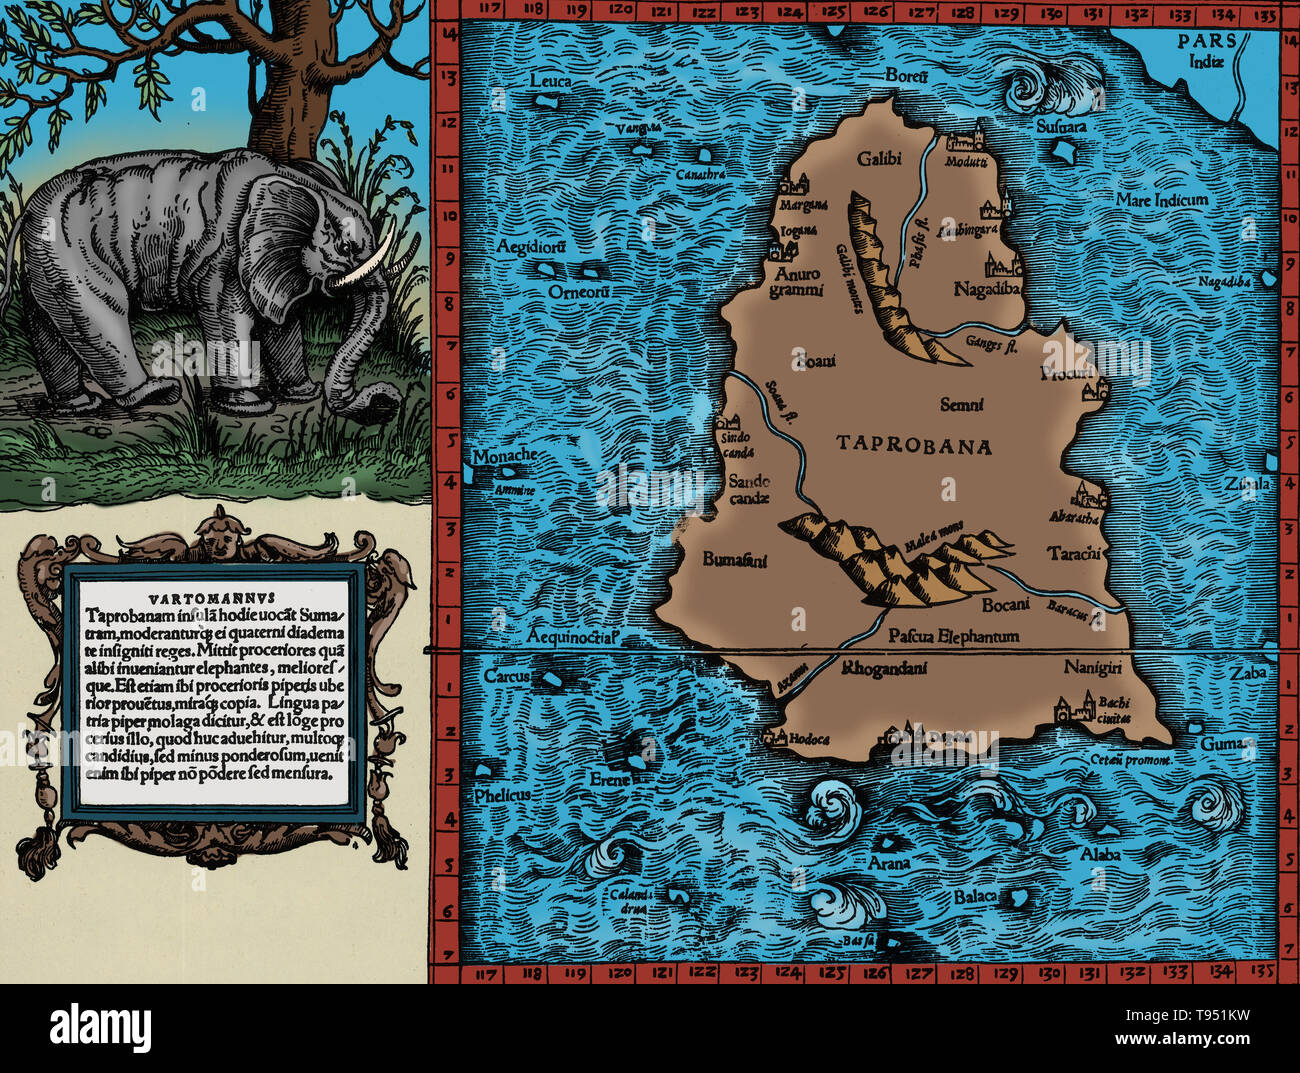 La carte de Ptolémée de Ceylan à partir de la description contenue dans le livre de Ptolémée Geographia, écrit 150 AD. Bien que les cartes authentiques n'ont jamais été trouvés, la Geographia contient des milliers de références à diverses parties de l'ancien monde, avec des coordonnées pour la plupart, ce qui a permis de reconstruire les cartographes du monde de Ptolémée vue lorsque le manuscrit a été re-découvert autour de 1300 AD. Banque D'Images